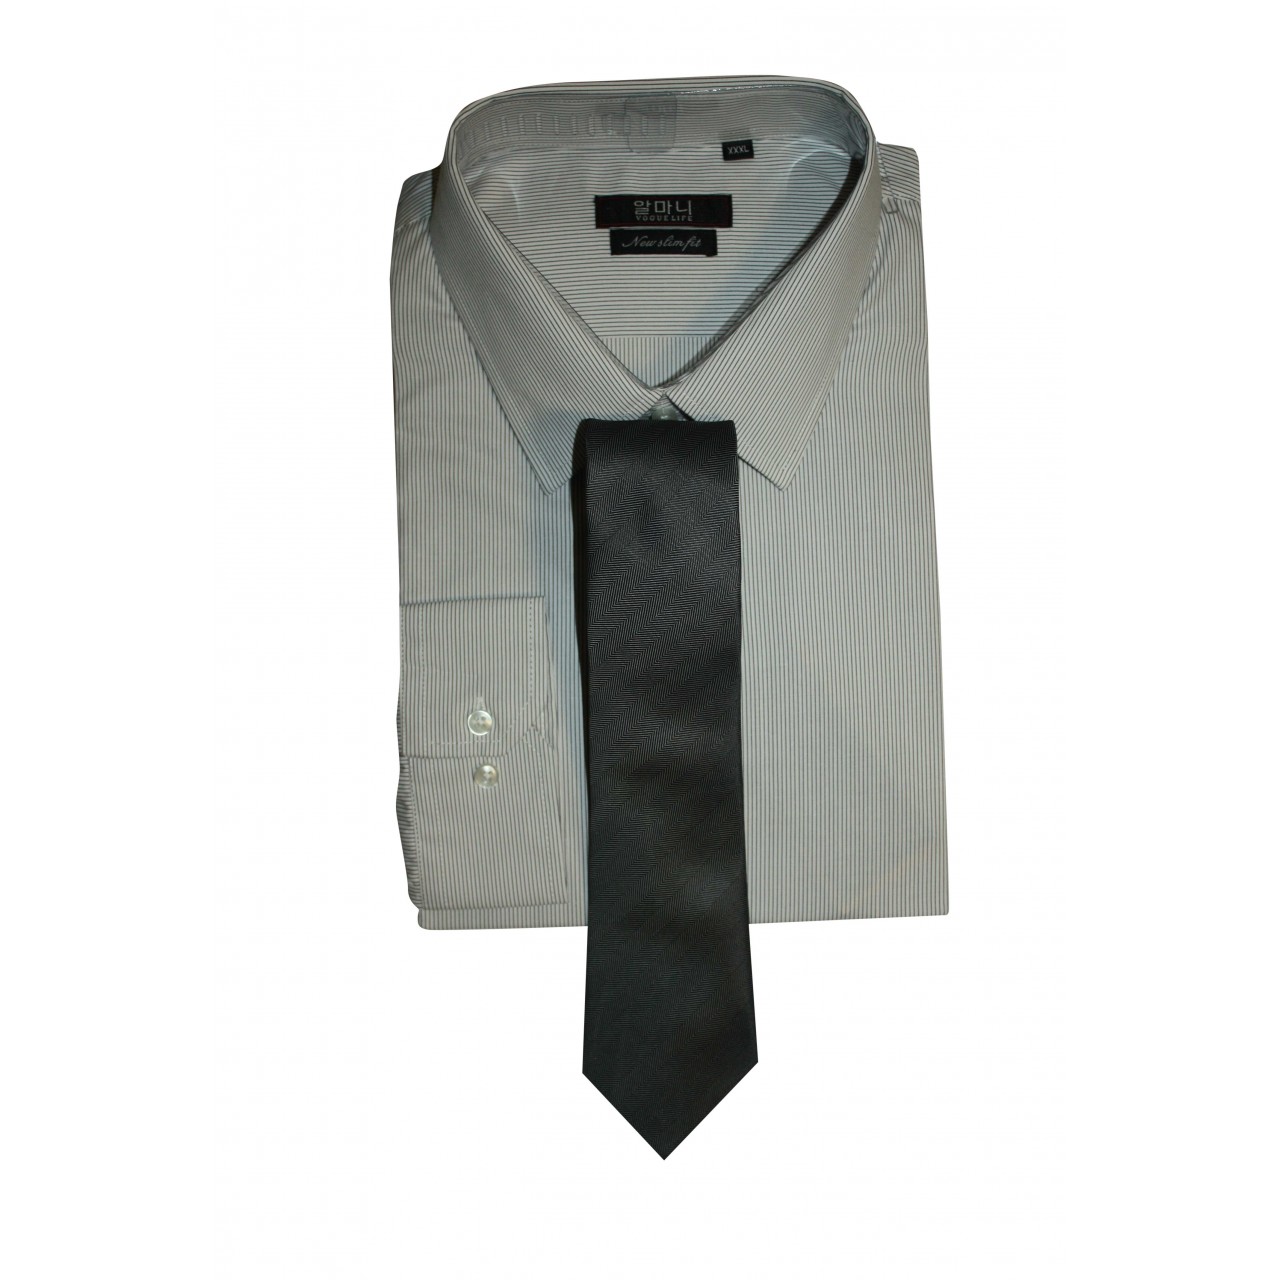 Men's Formal Basic VOGUE LIFE Ash Color Striped Shirt With Tie Black Set